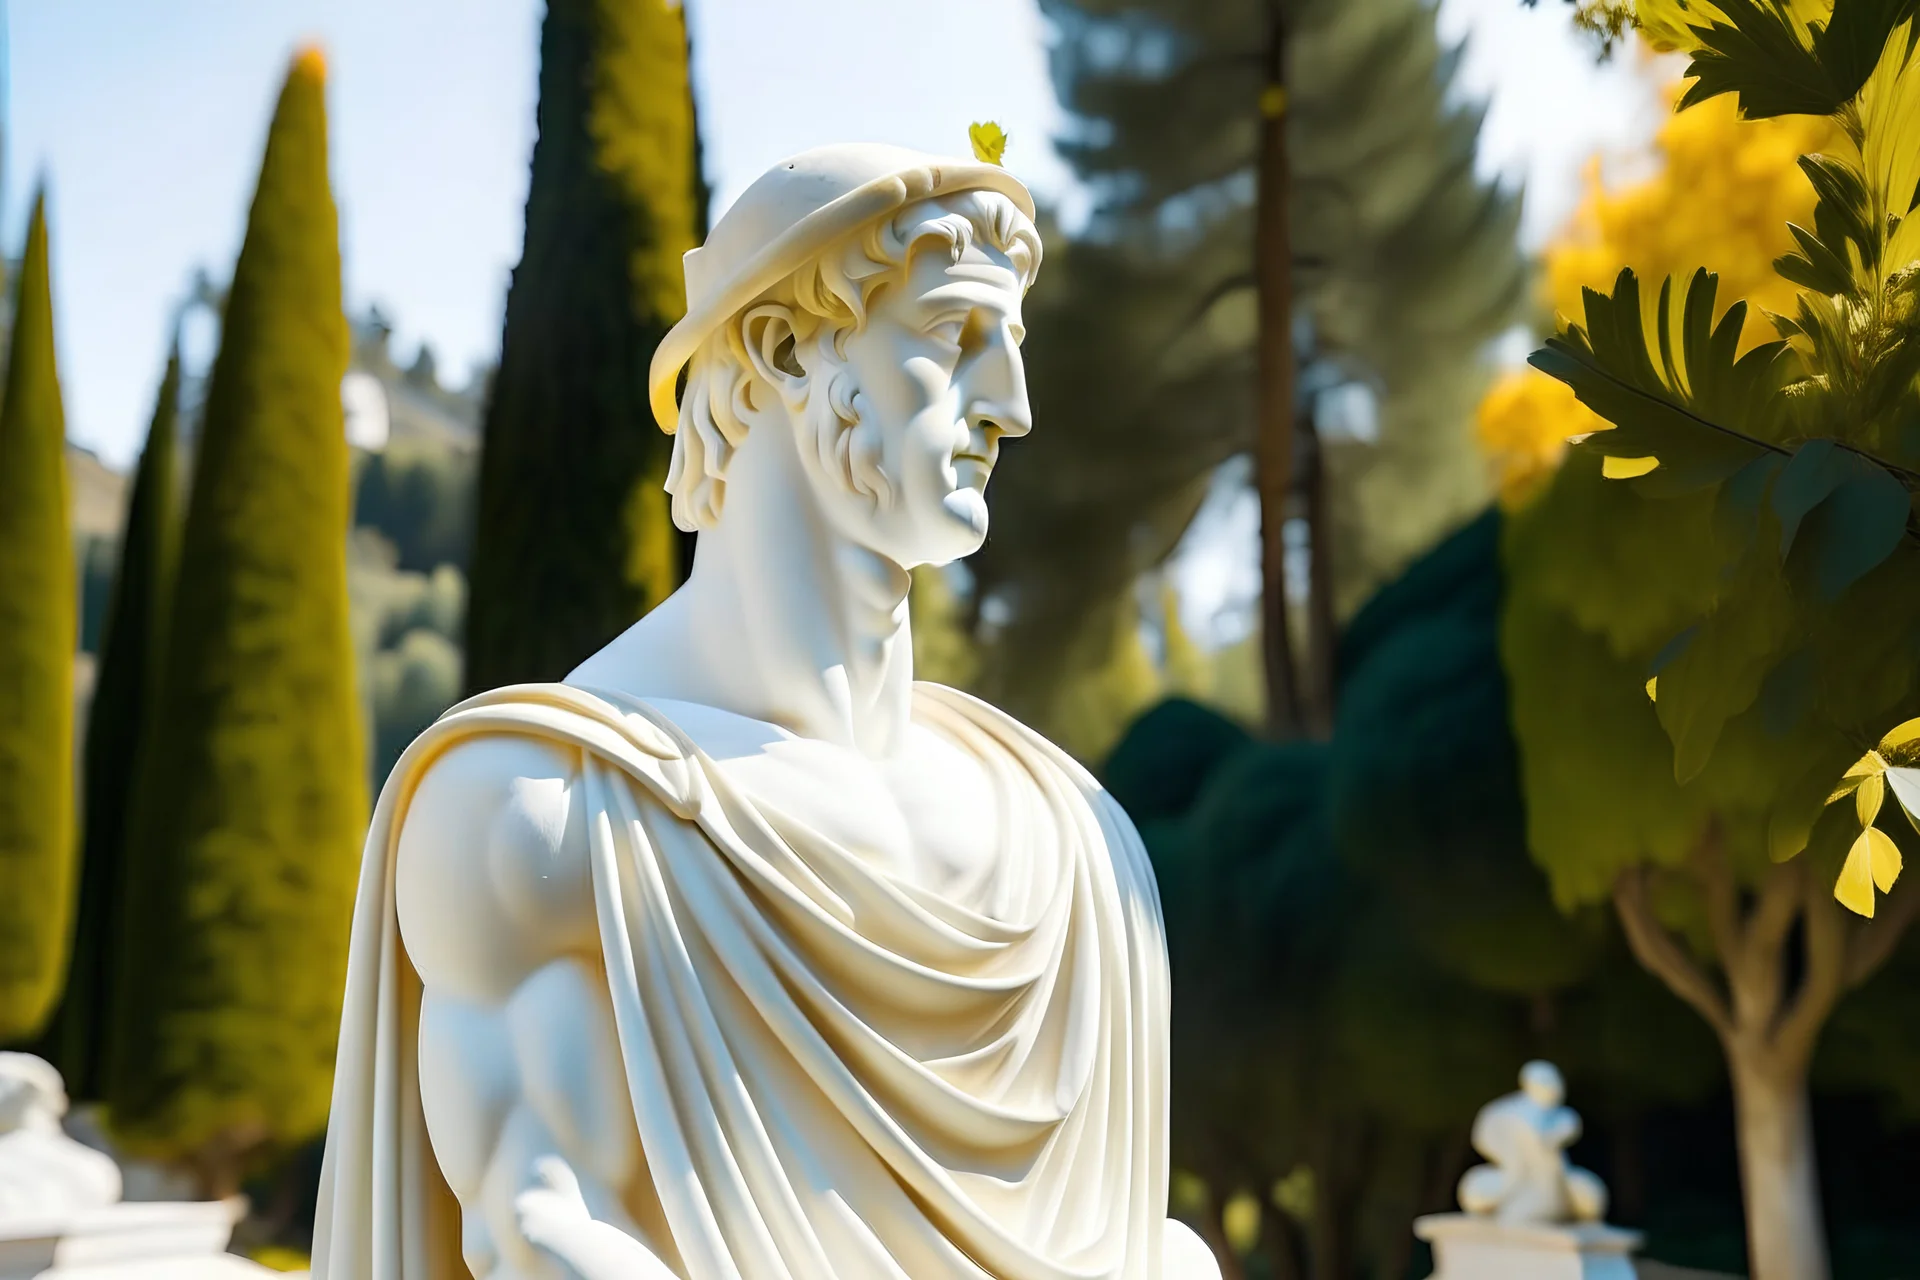 portrait haute résolution d'une statue grecque en marbre blanc, d'un homme portant une couronne de laurier en or pour seul vêtement, angle de vue parfait, en extérieur, soleil éclatant, verdures, arbres méditerranéen tout autour, pinède, comme à Delphes en Grèce.